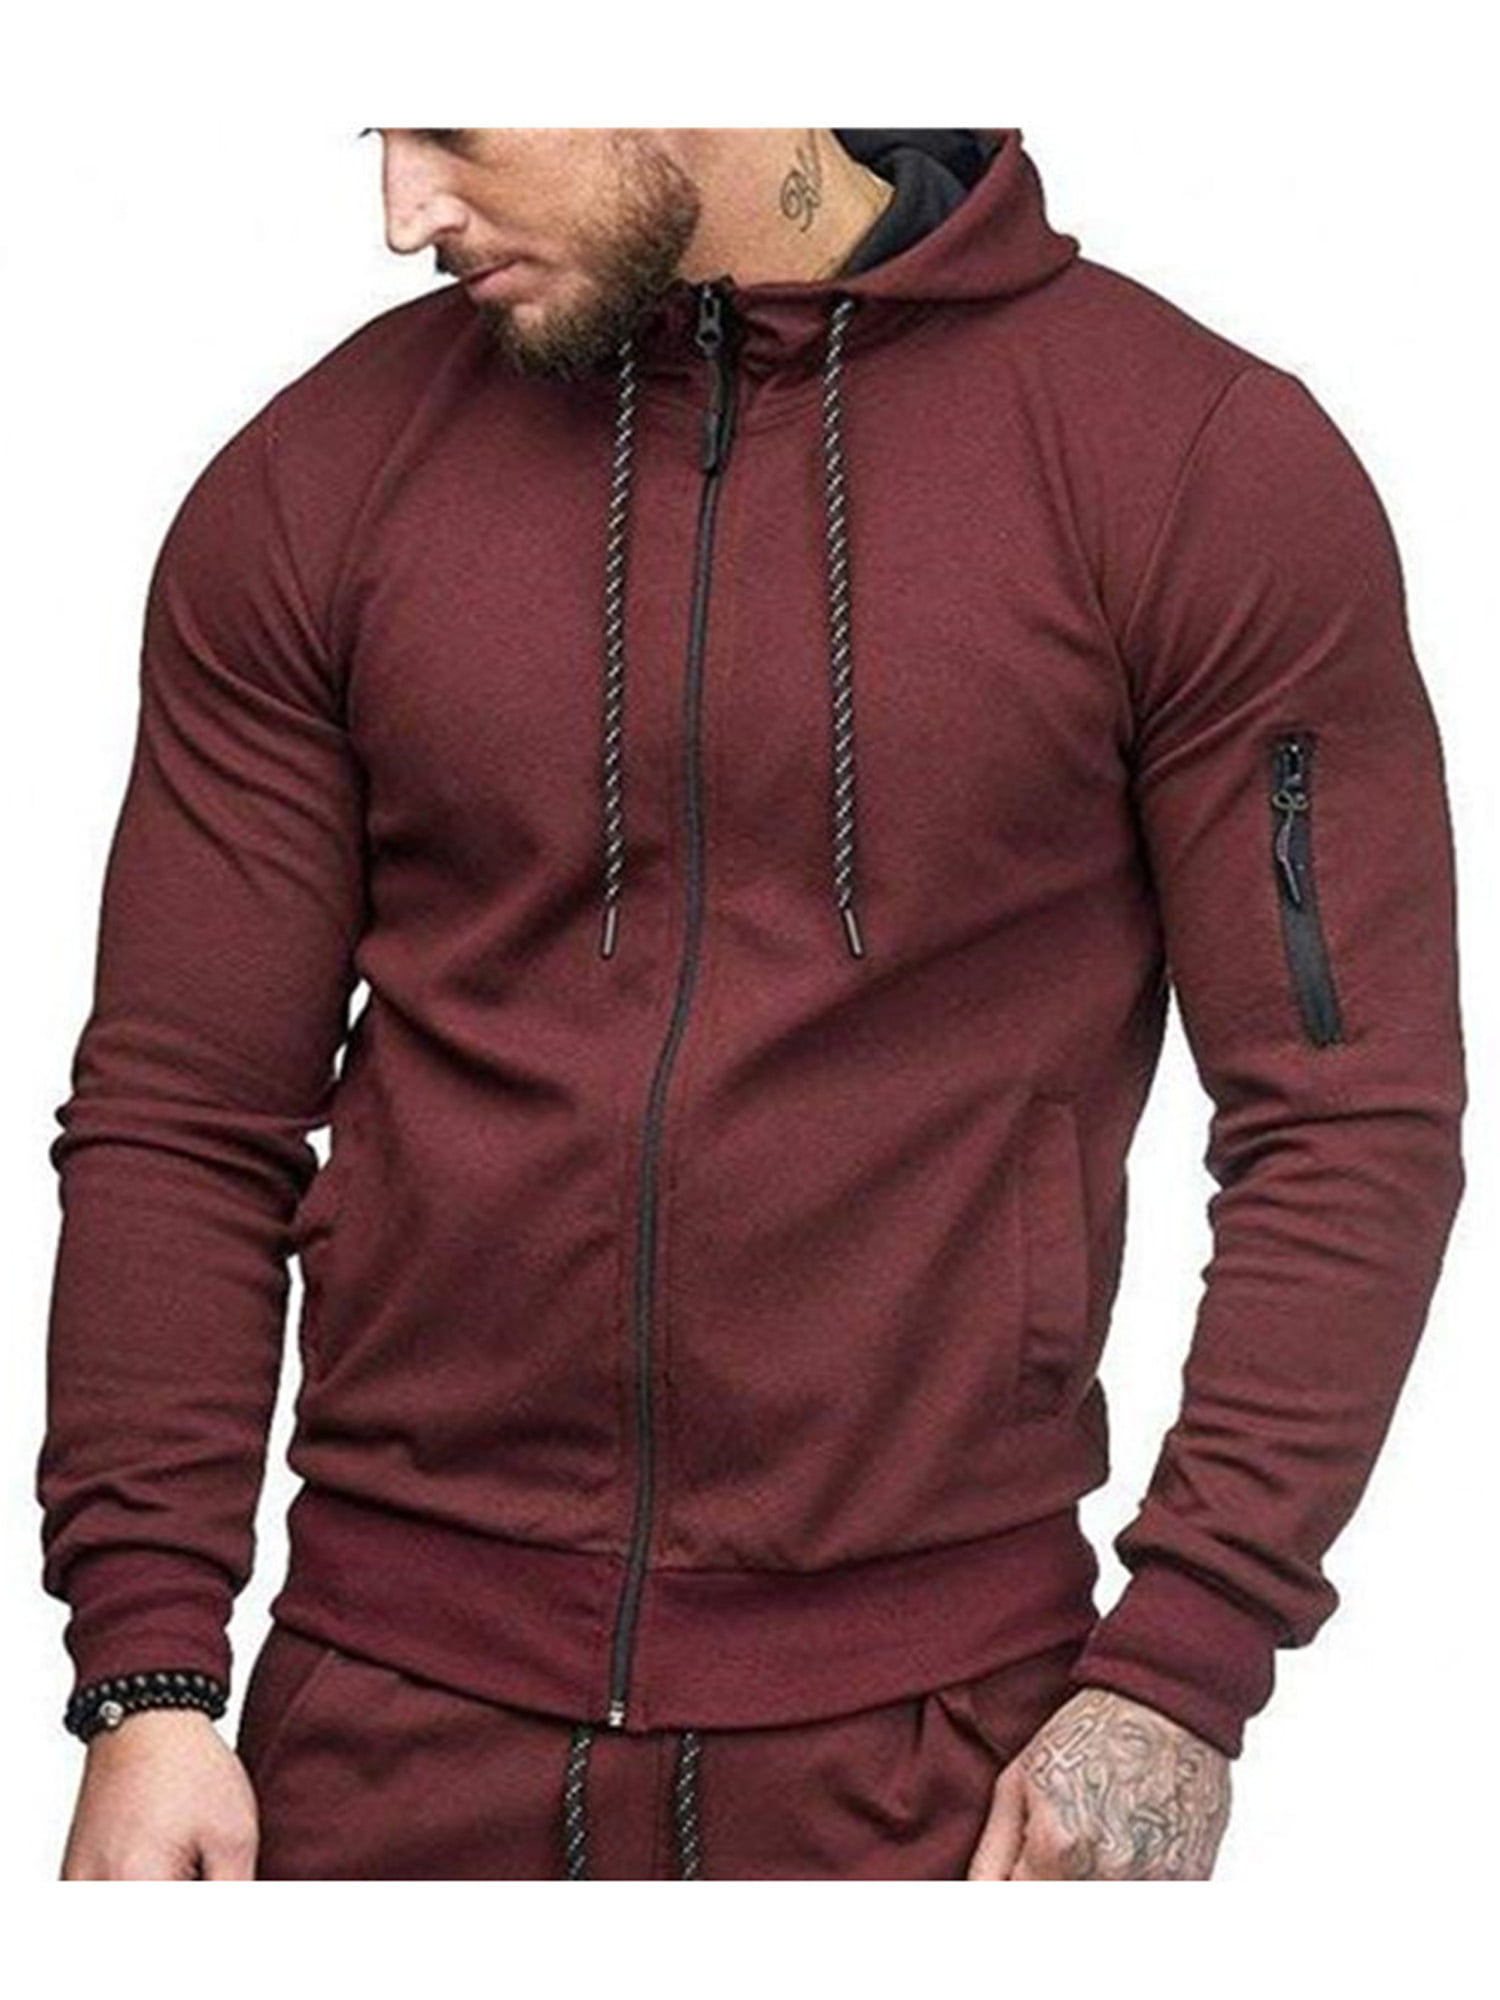 Hooded Warm Sport Mens Tops Jacket Coat Pullover Sweatshirt Hoodie Fleece Casual